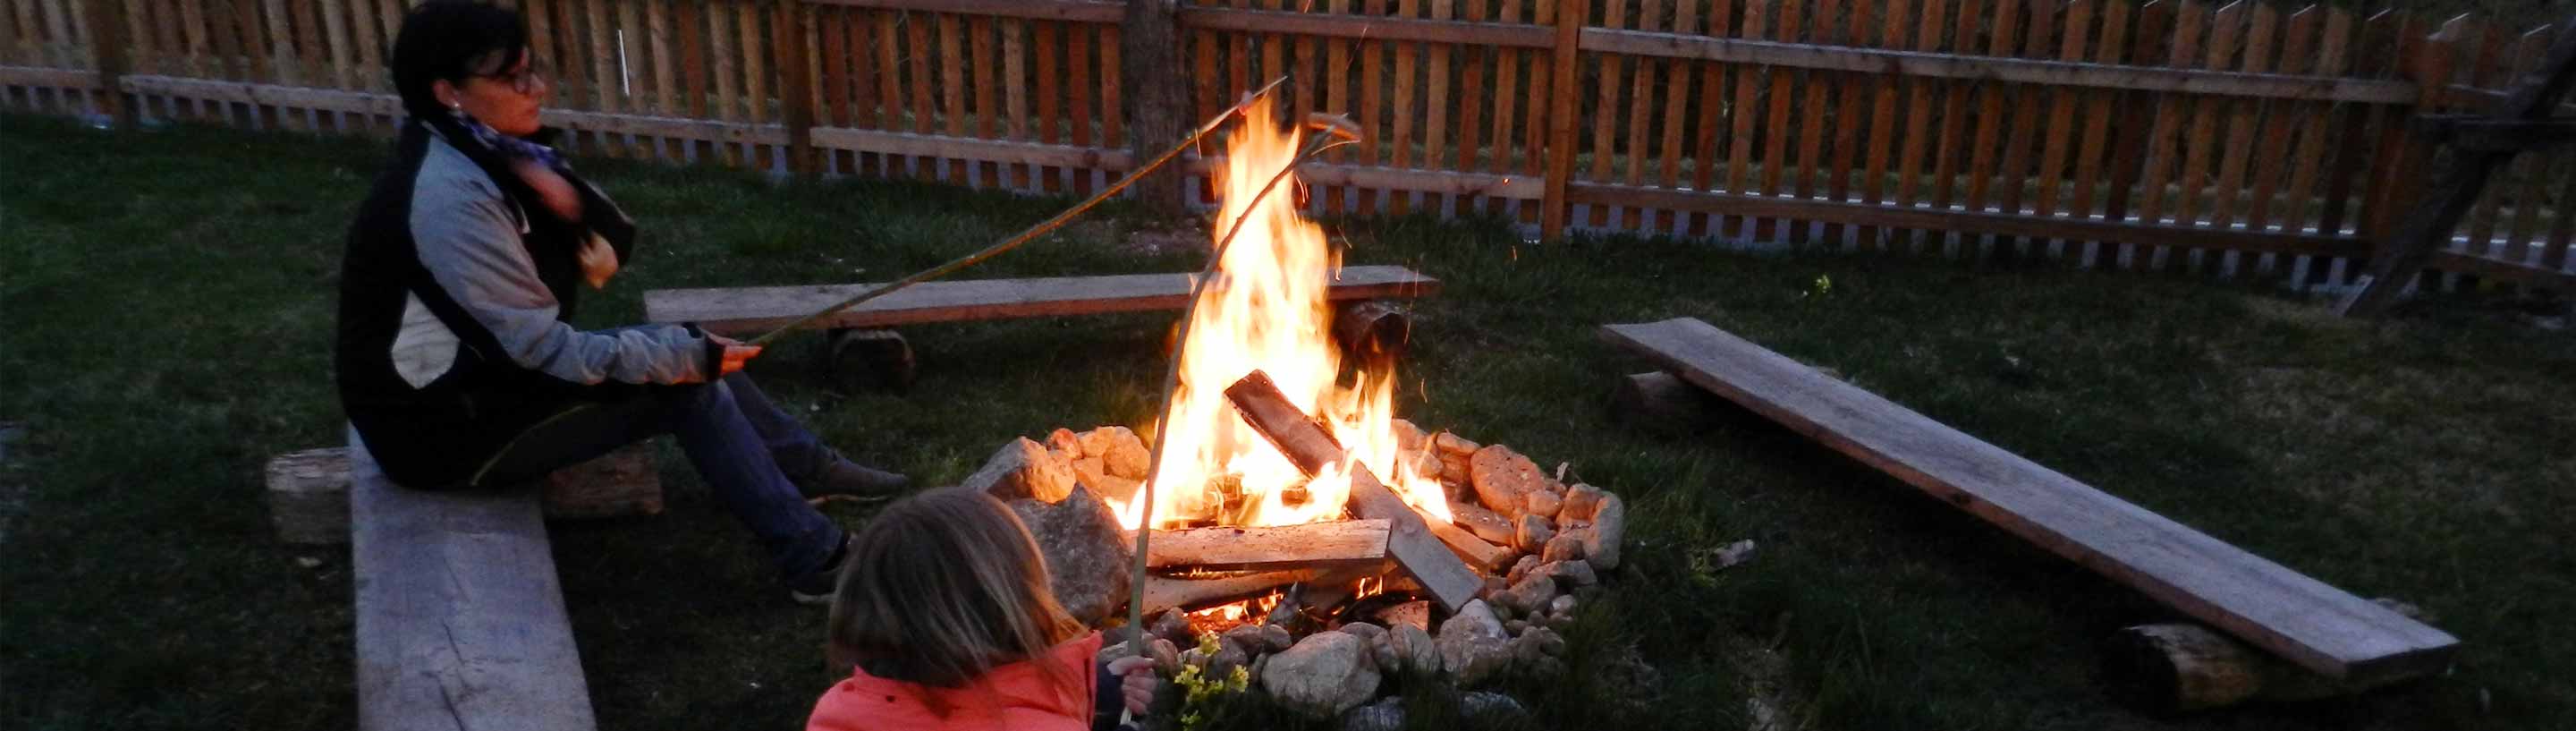 Familie Bareck hat manchmal auch Zeit dafür, mit ihren Kindern ein romantisches Lagerfeuer zu errichten und Würstel zu grillen. 